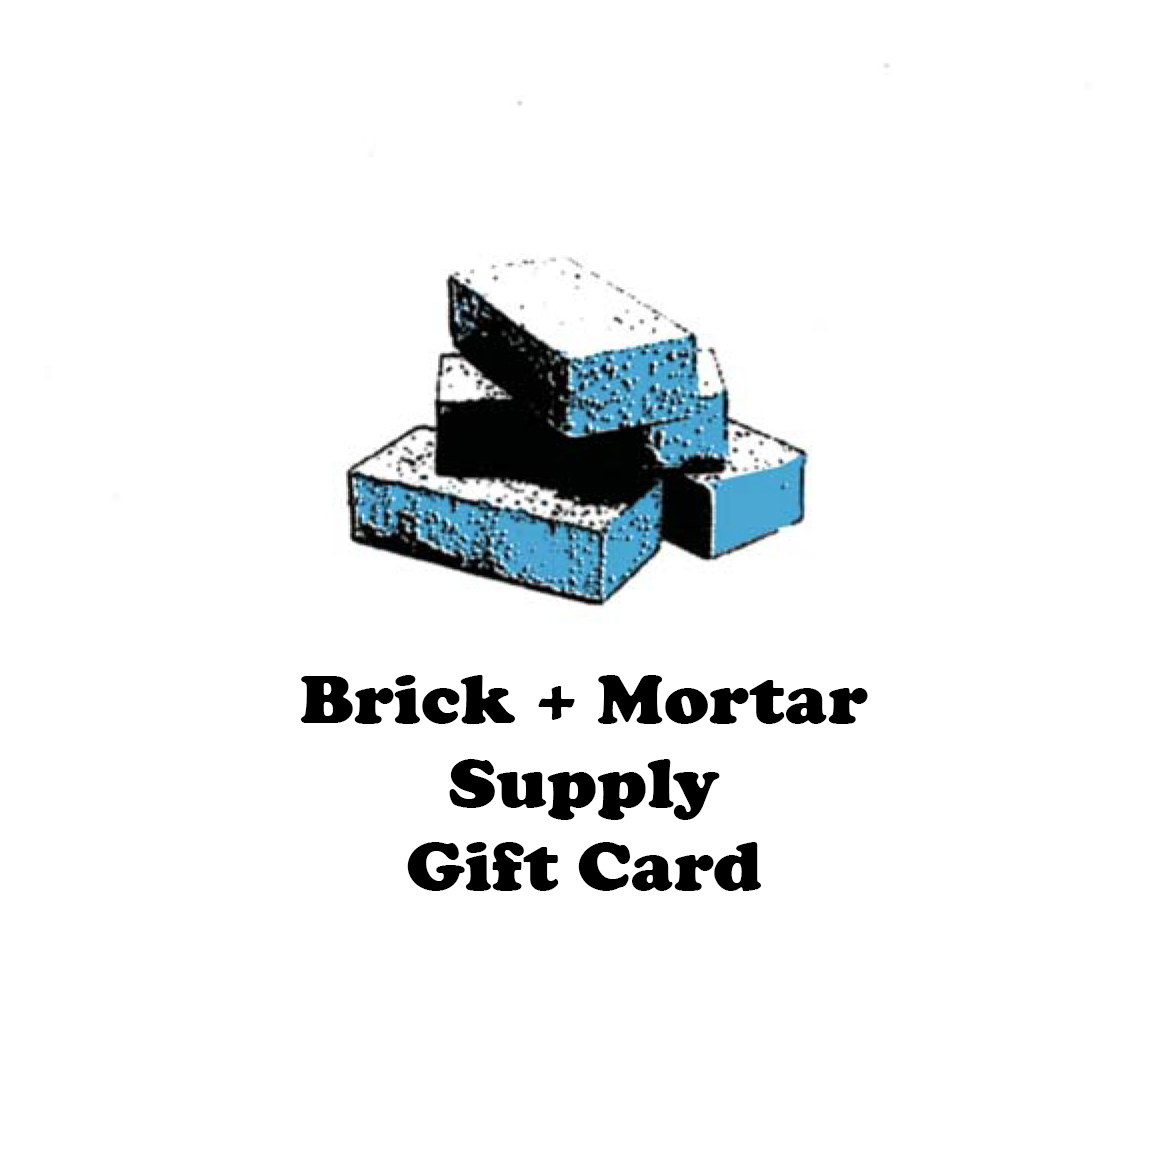 Brick + Mortar Gift Card